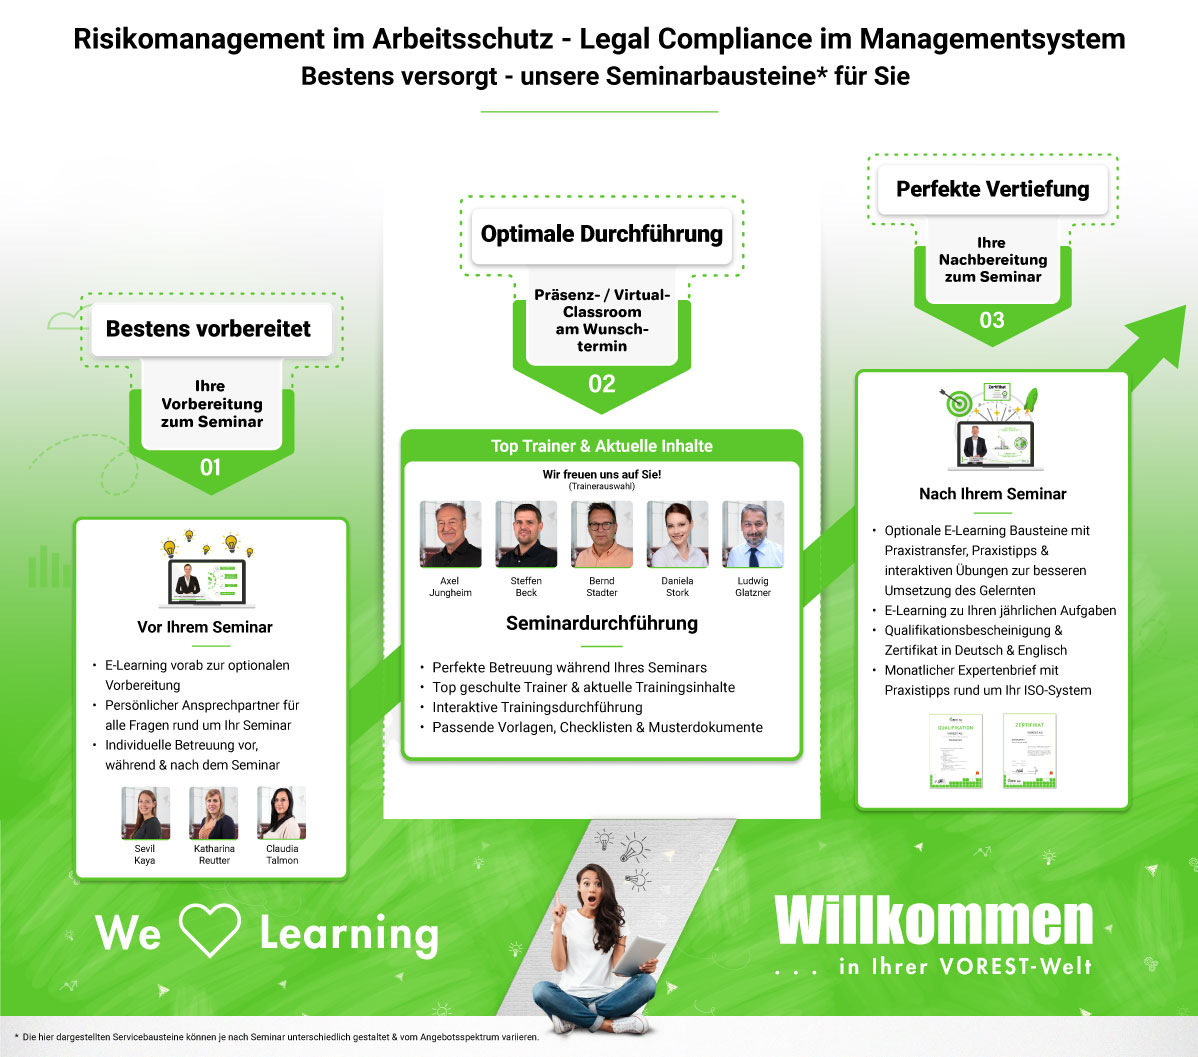 Risikomanagement im Arbeitsschutz - so stellen Sie Ihre Legal Compliance im Managementsystem sicher